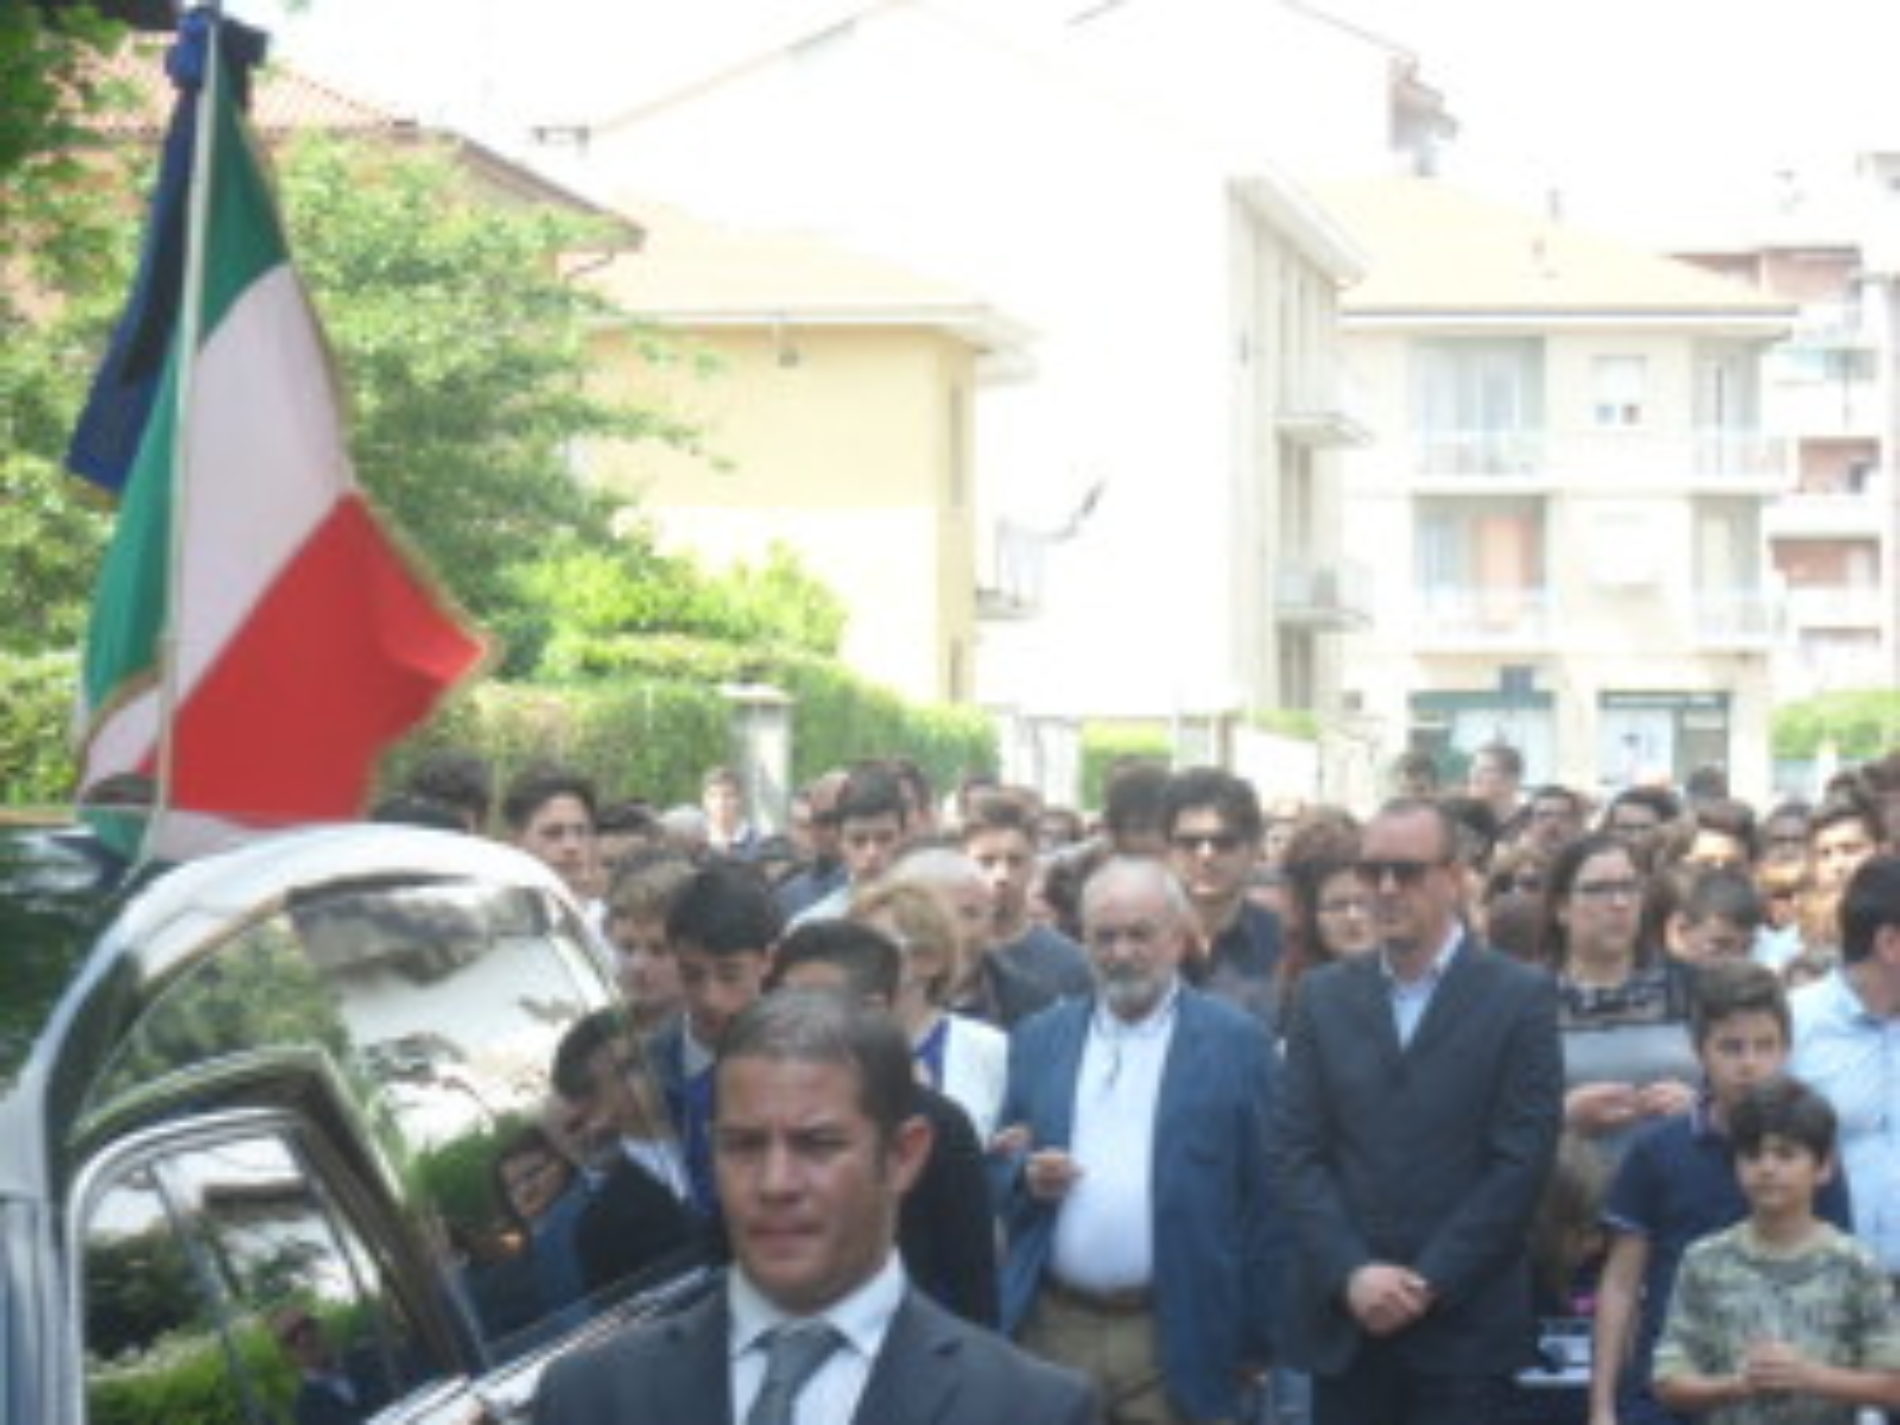 Celebrati i funerali questo pomeriggio, del giovane Damiano Avola, moltissimi i giovani presenti